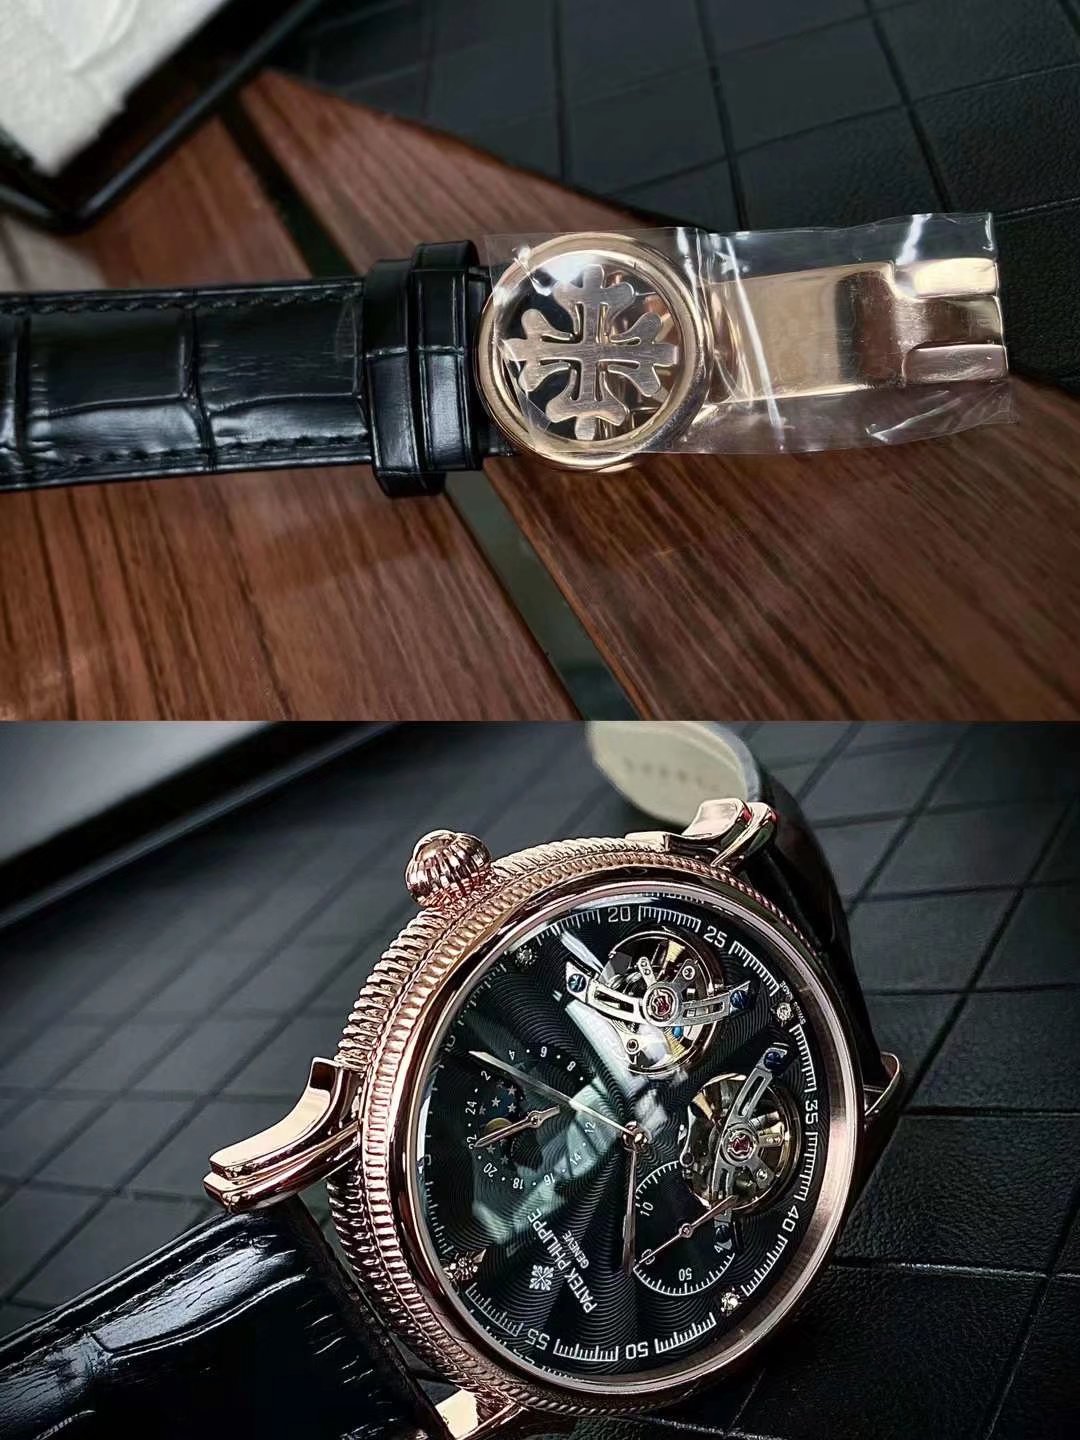 パテックフィリップ腕時計コピーの新作 43mmトゥールビヨン P238890[8]